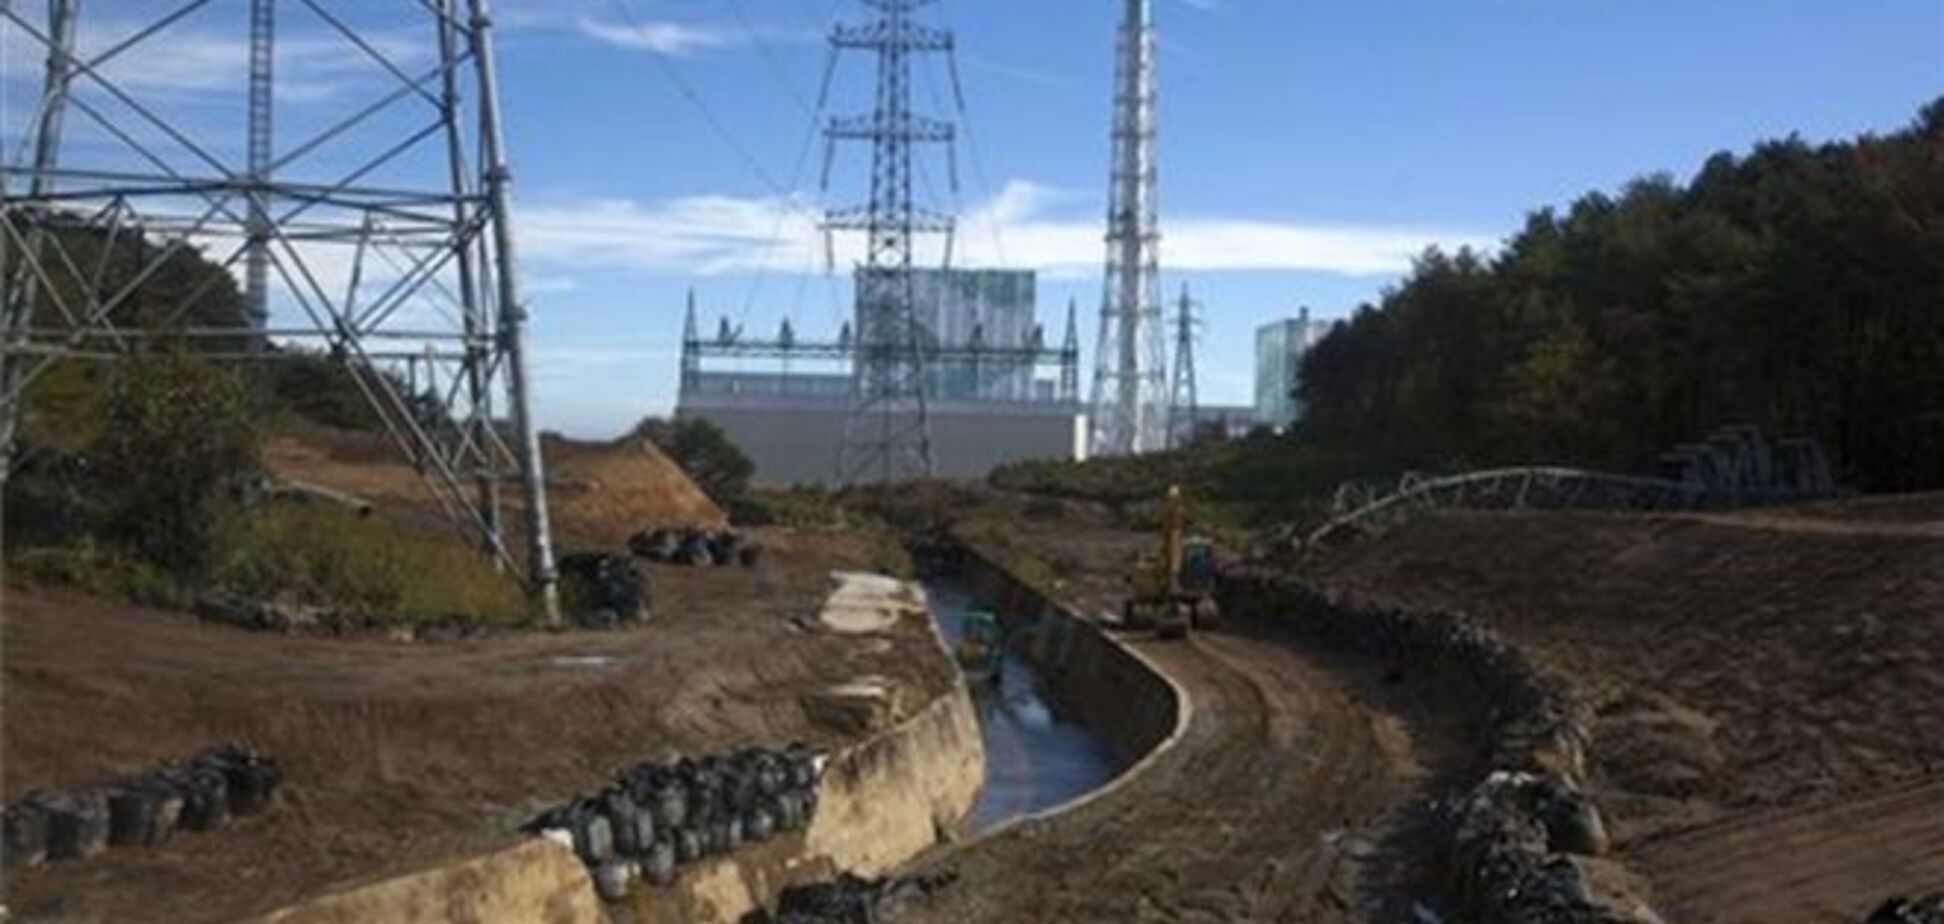 Над одним из объектов АЭС 'Фукусима' вновь появился пар